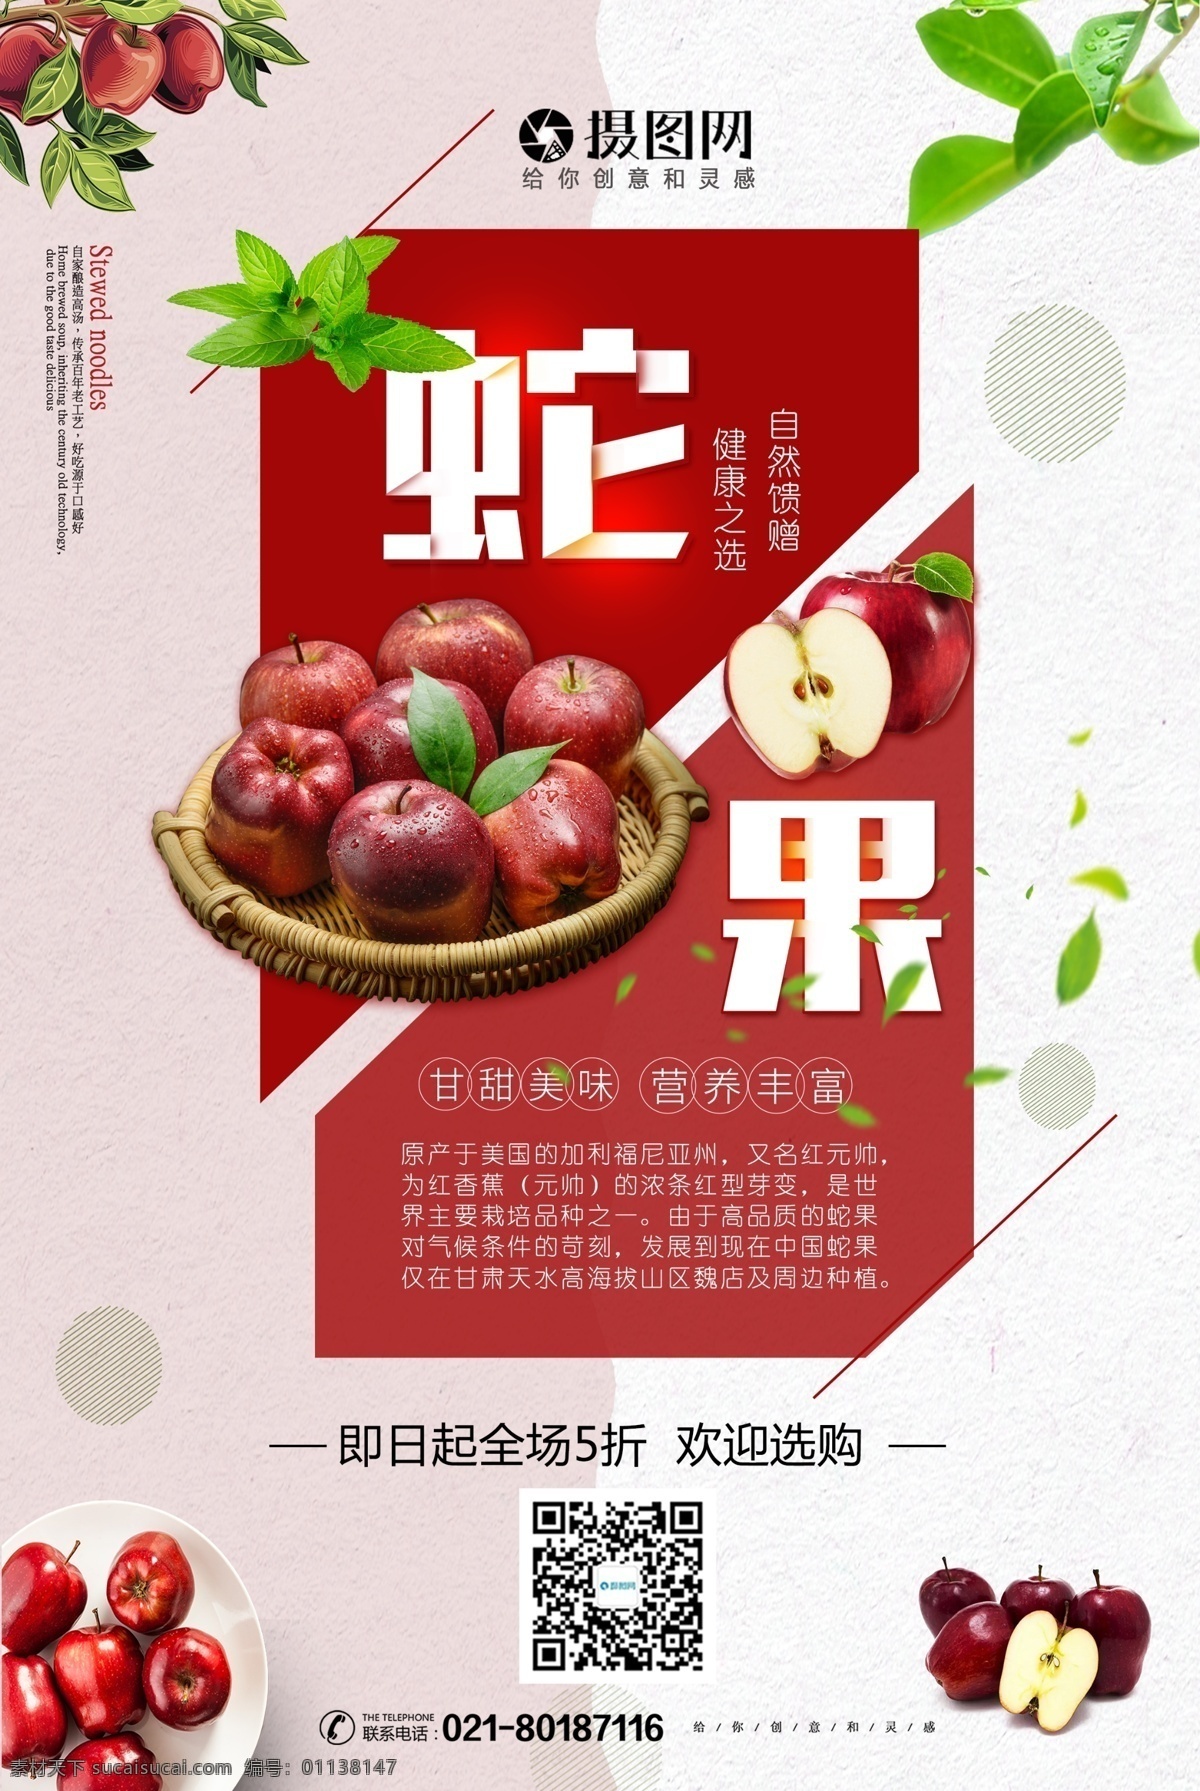 蛇果 水果 美食 海报 美食海报 甘甜美味 营养丰富 自然馈赠 健康之选 苹果 水果店促销